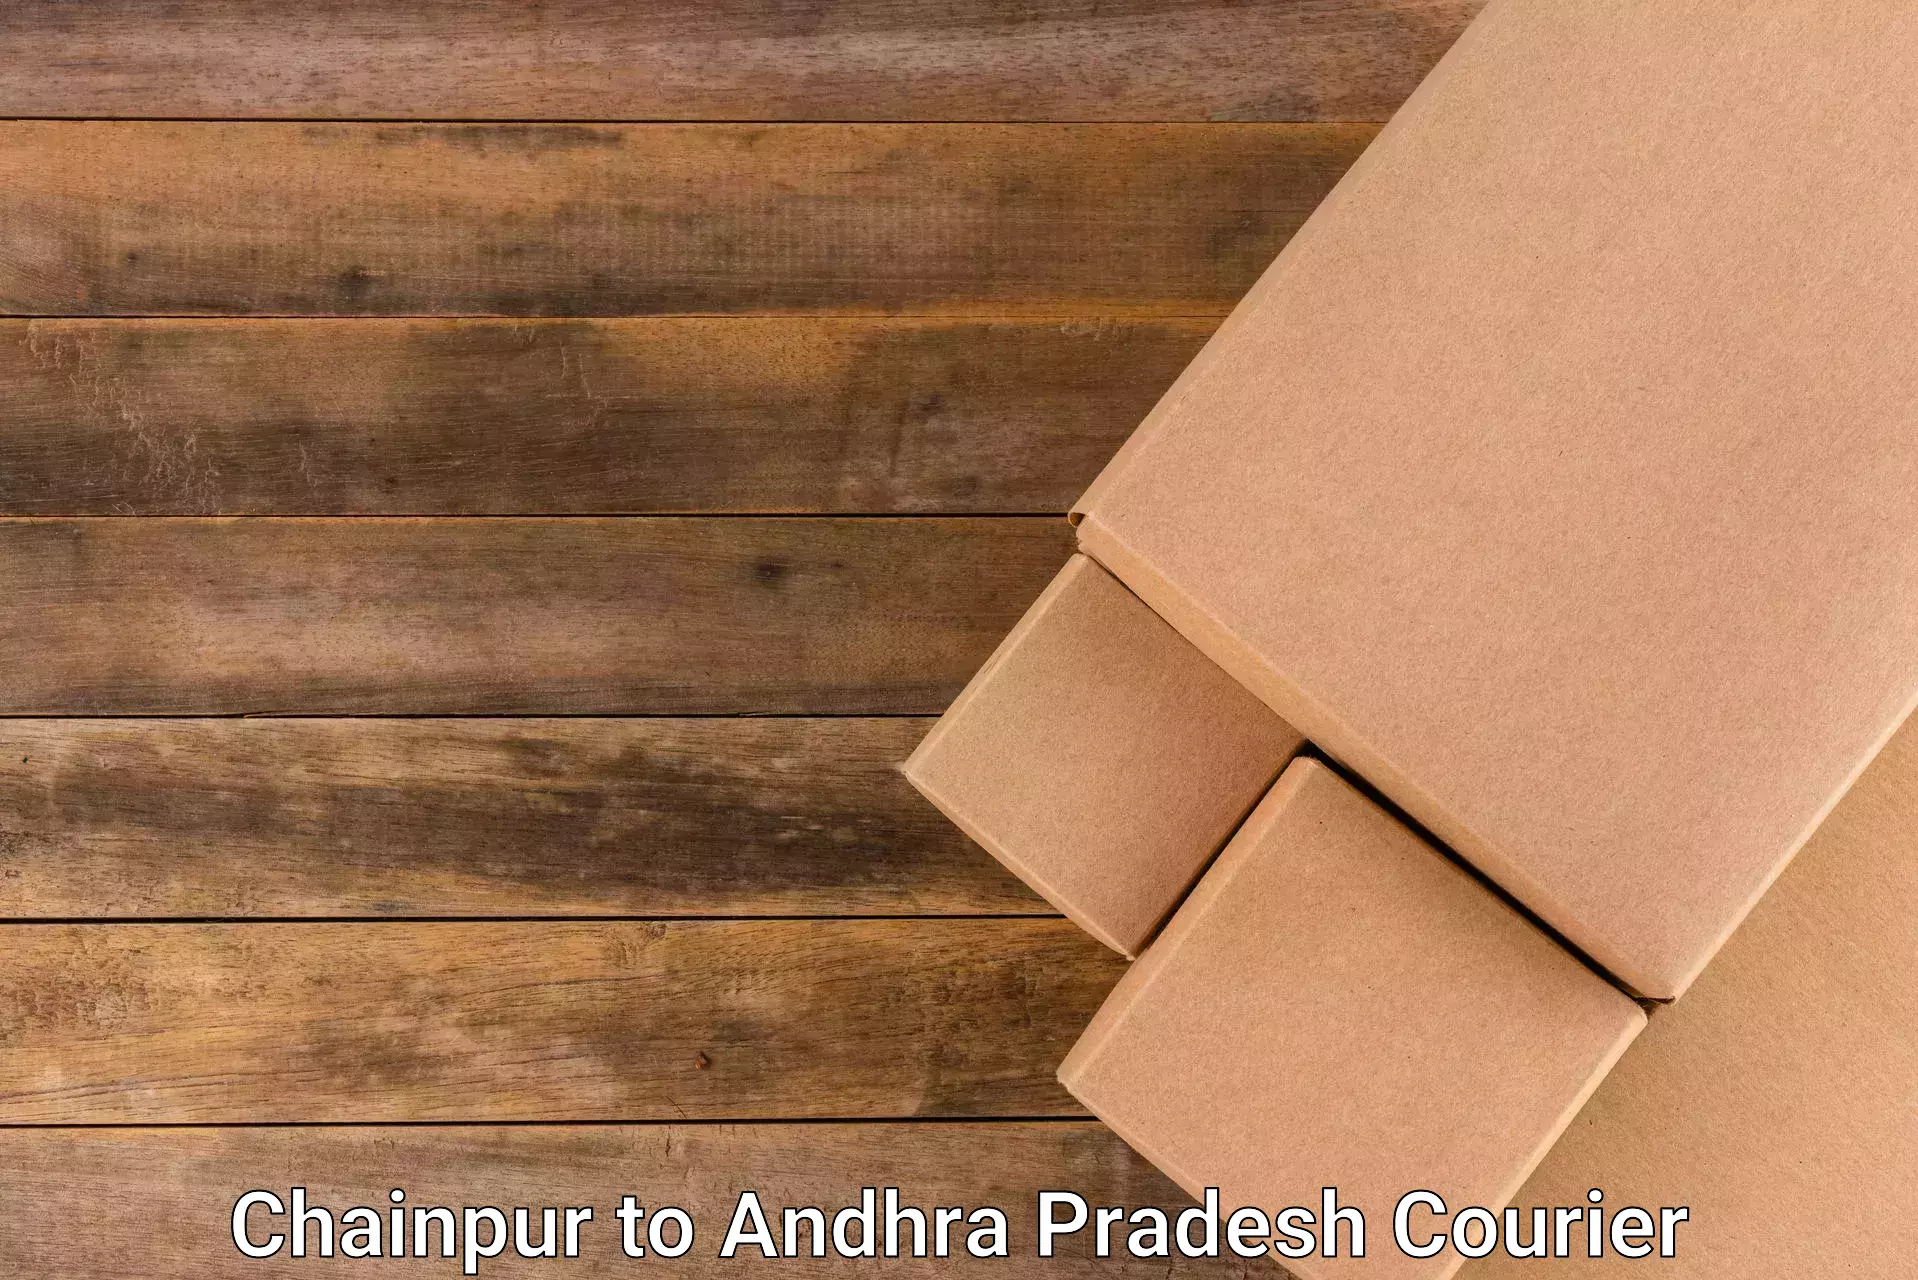 Modern delivery technologies Chainpur to Kalyandurg